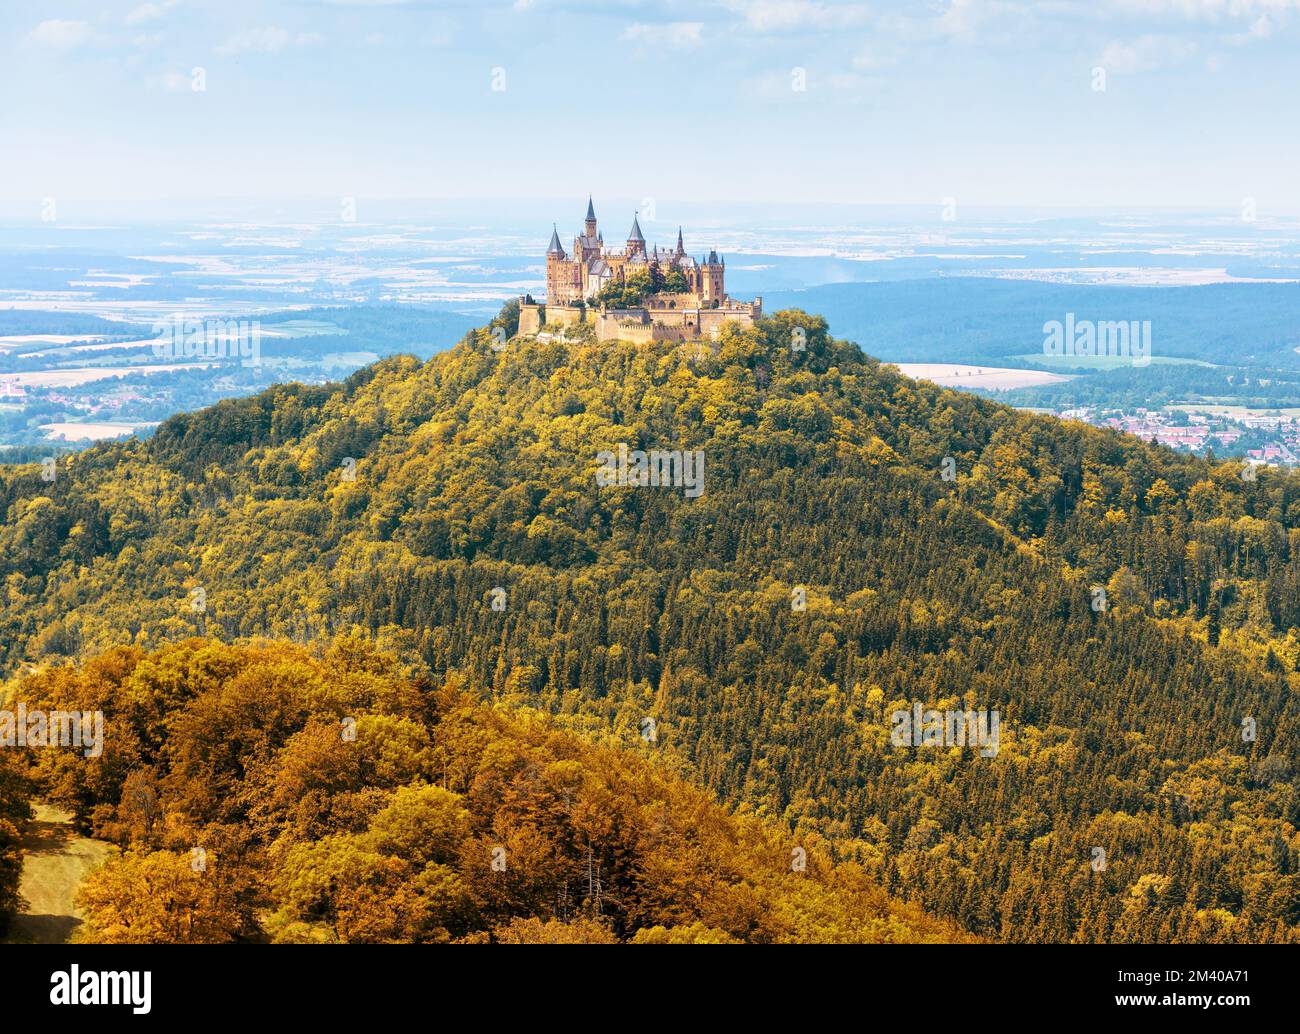 Schloss Hohenzollern auf dem Berggipfel bei Stuttgart, Baden-W. Landschaft der Schwäbischen Alpen in der Herbstsaison. Malerischer Blick auf die deutsche Burg im Herbst Stockfoto